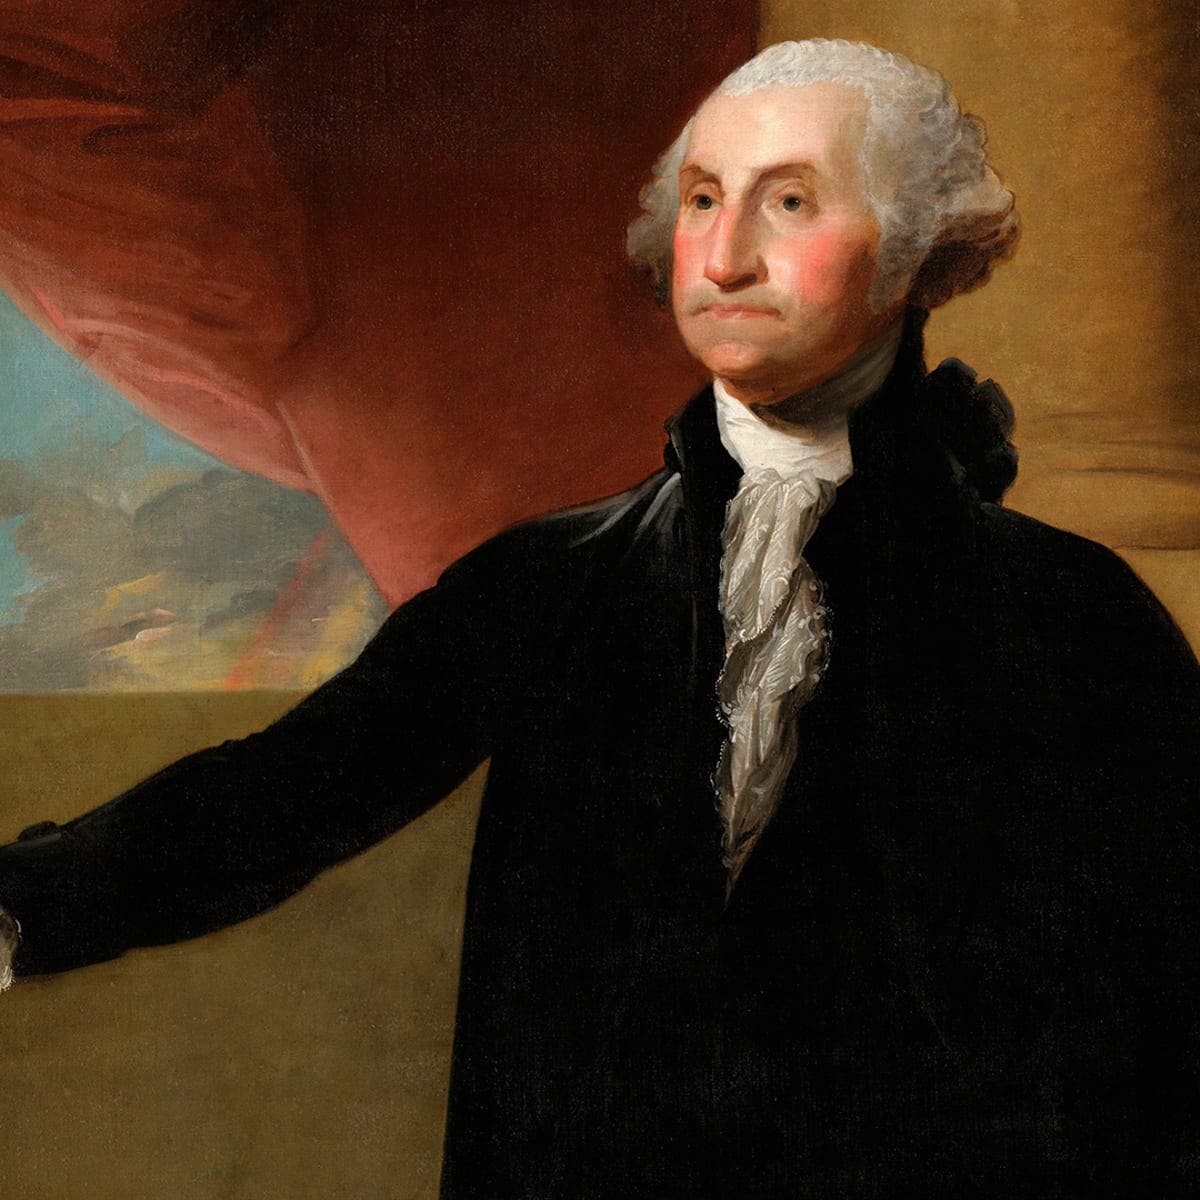 لوحة زيتية تجسد جورج واشنطن